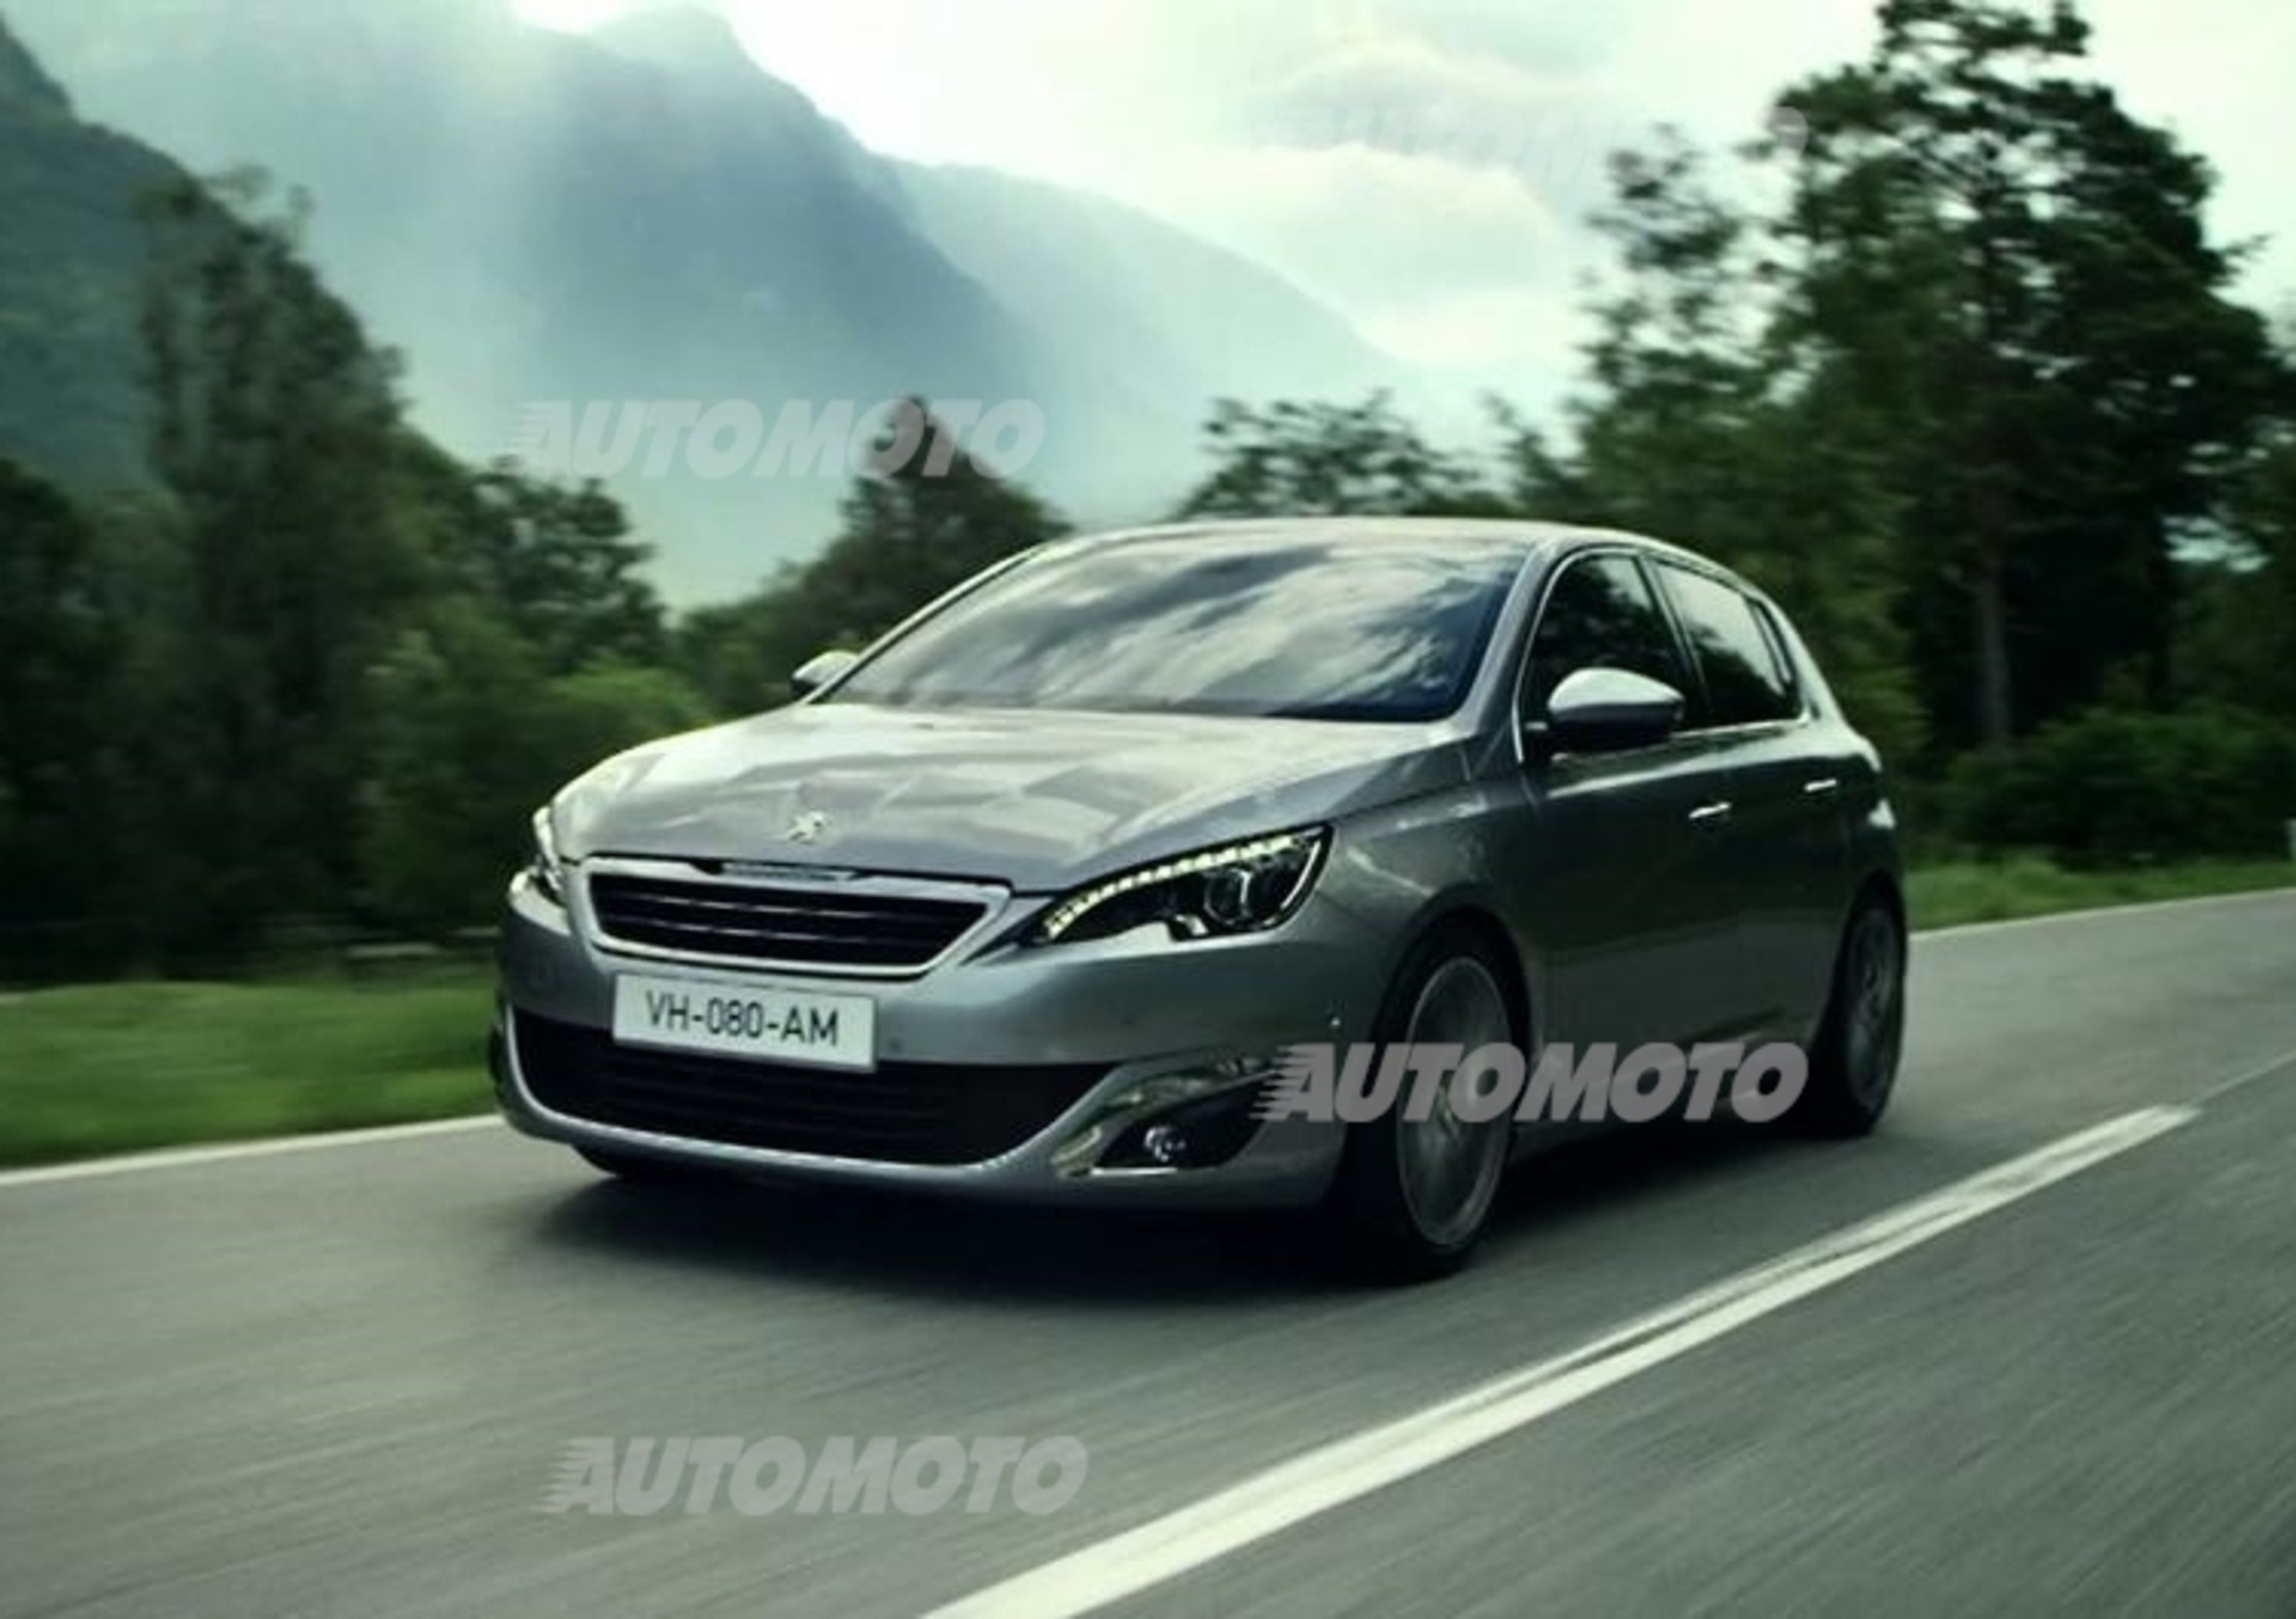 Nuova Peugeot 308: la nuova campagna pubblicitaria per la TV